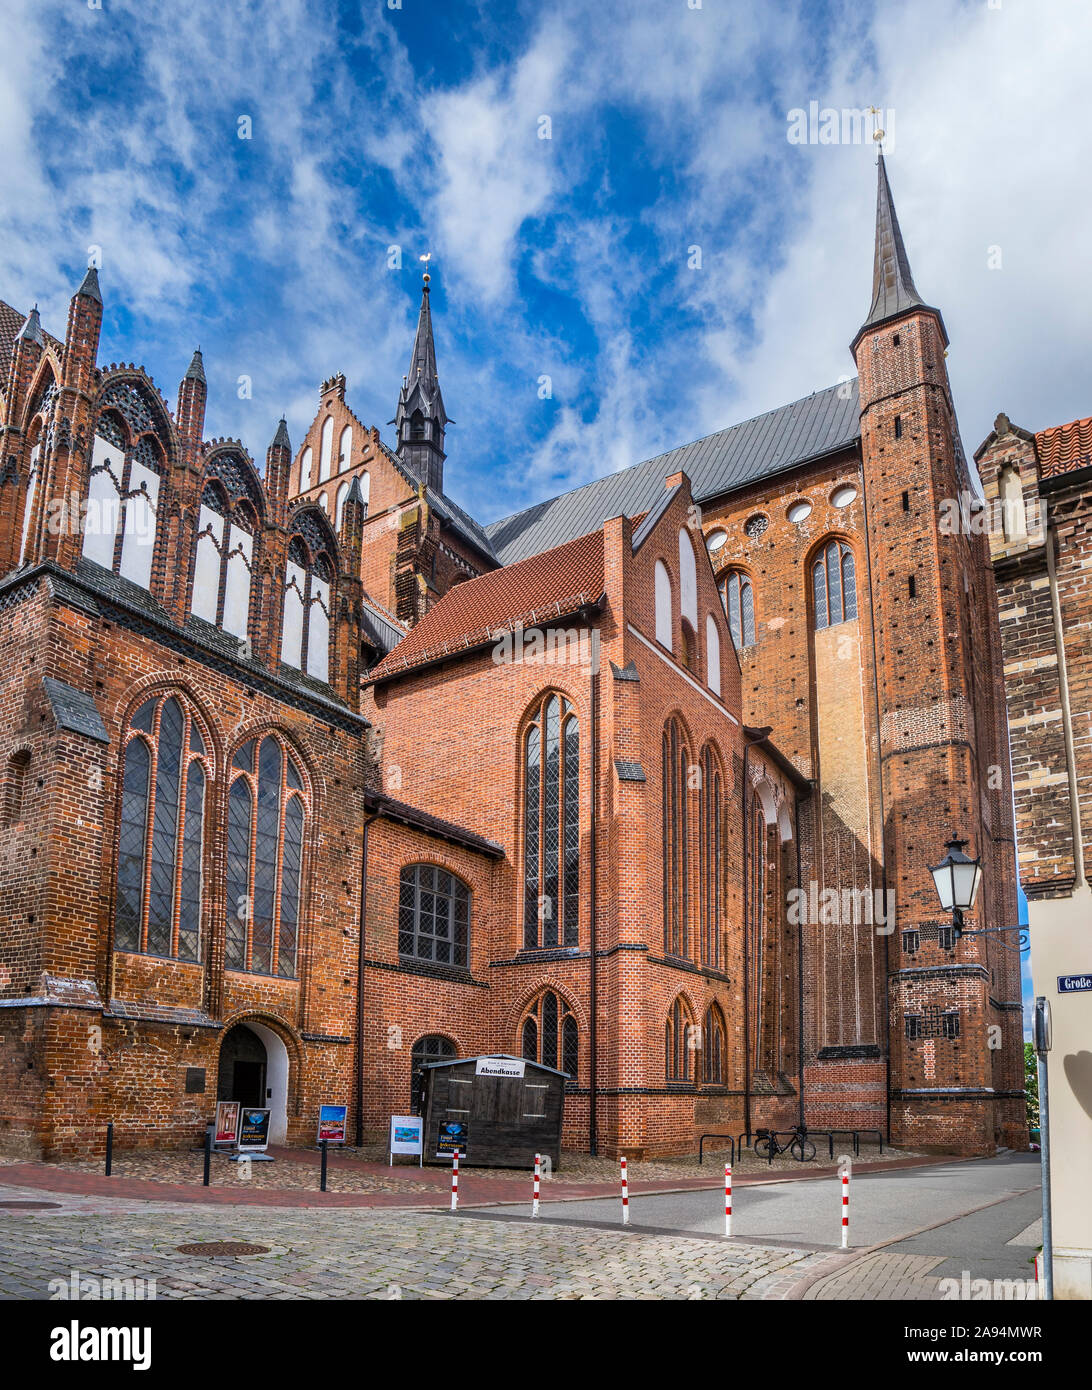 Vue sur le nord du transept et le choeur St George's Church Wismar, une architecture gothique en brique médiévale reconstruite, ce qui était dommage substancially Banque D'Images